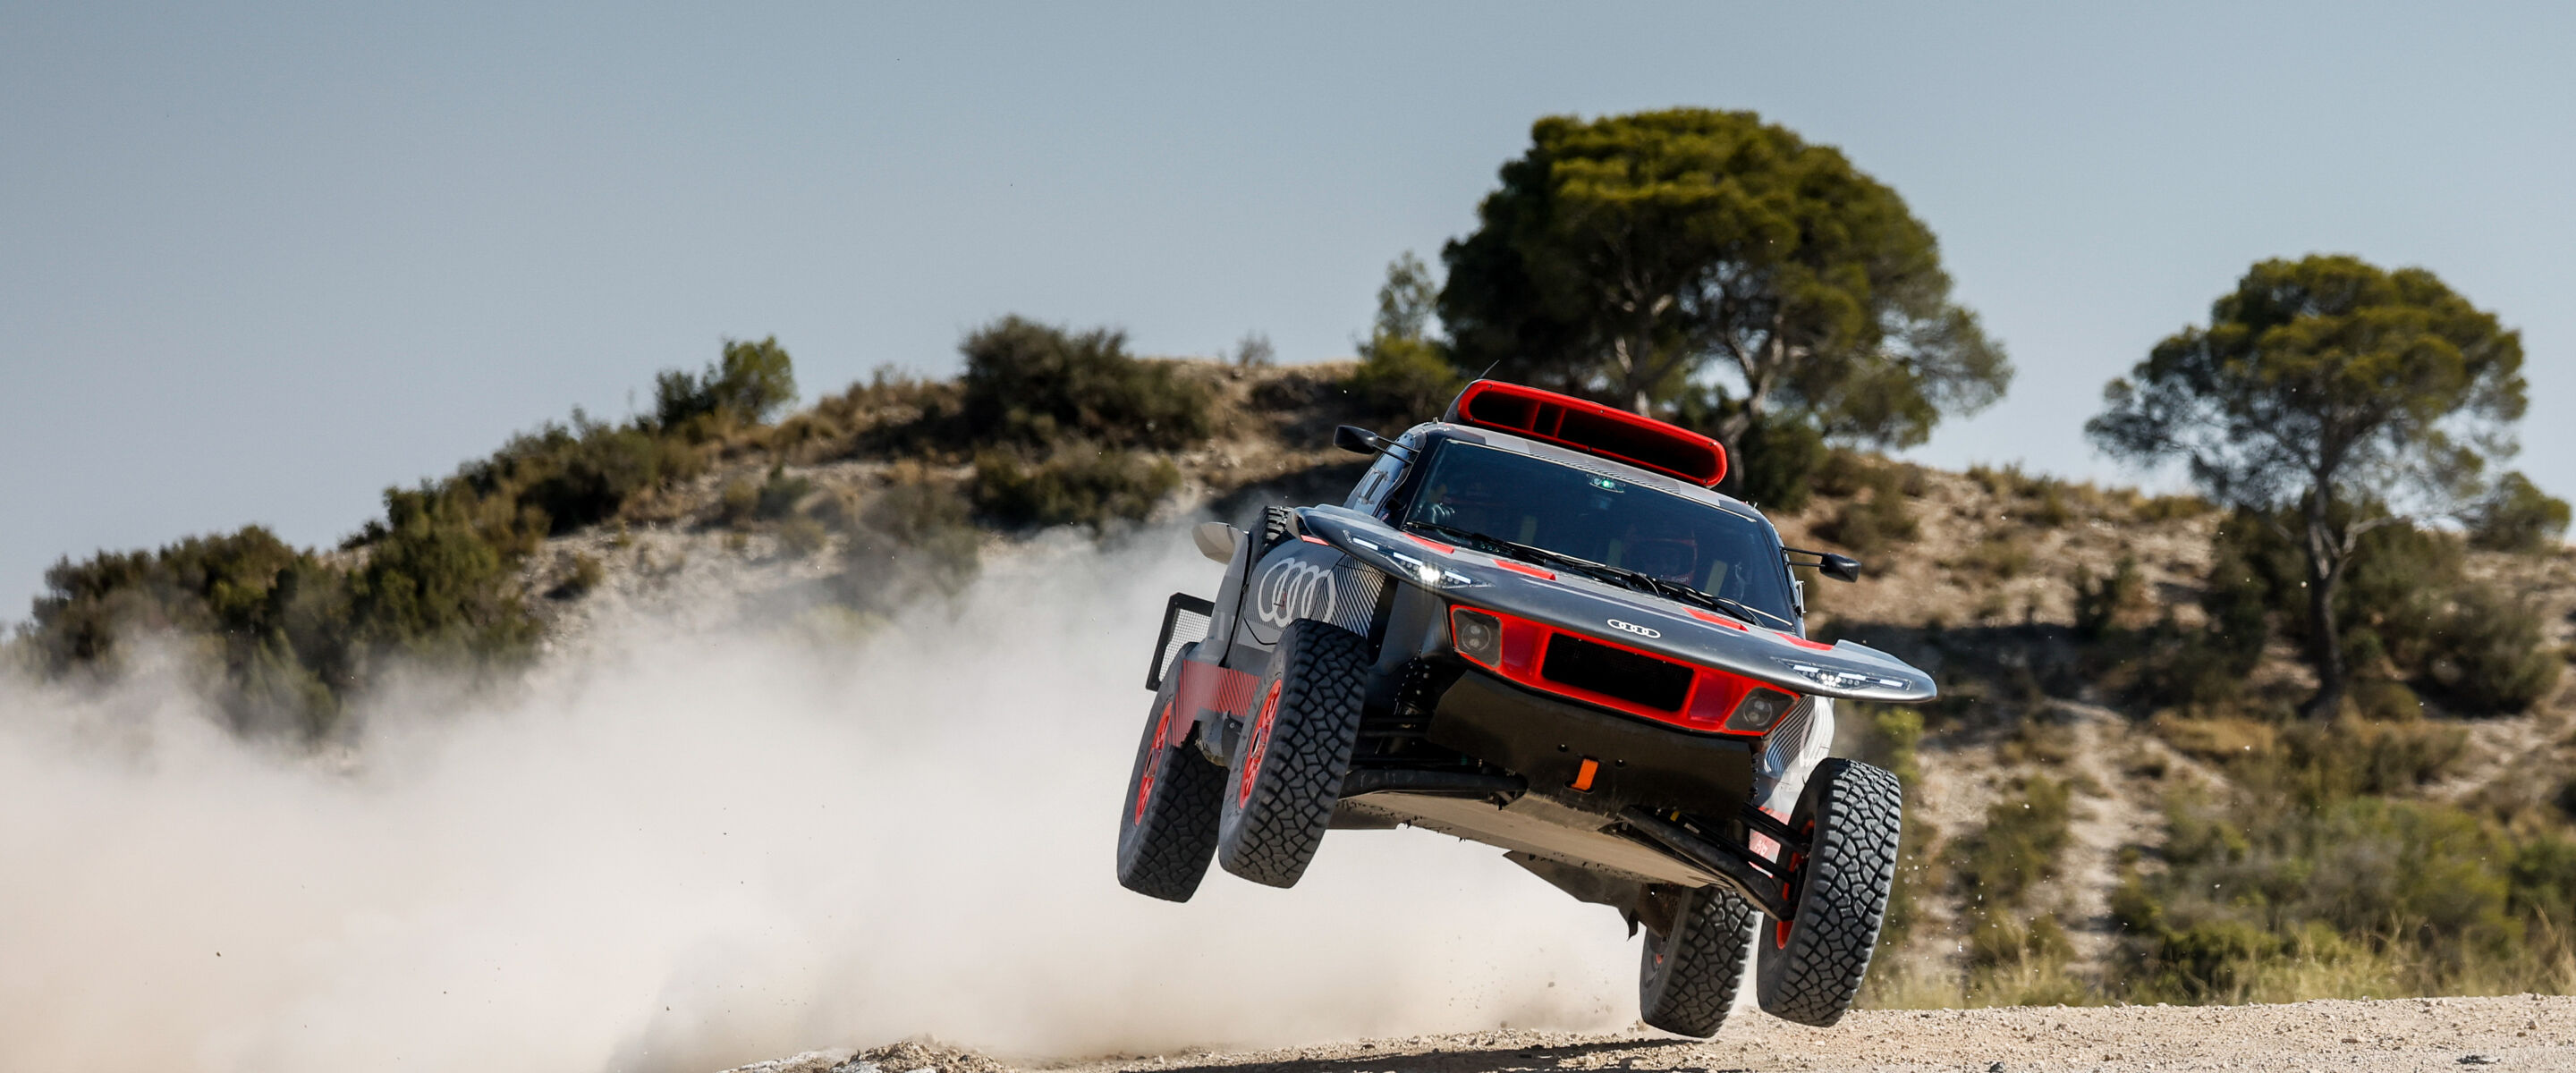 De evolutie van de Dakar-strijder van Audi